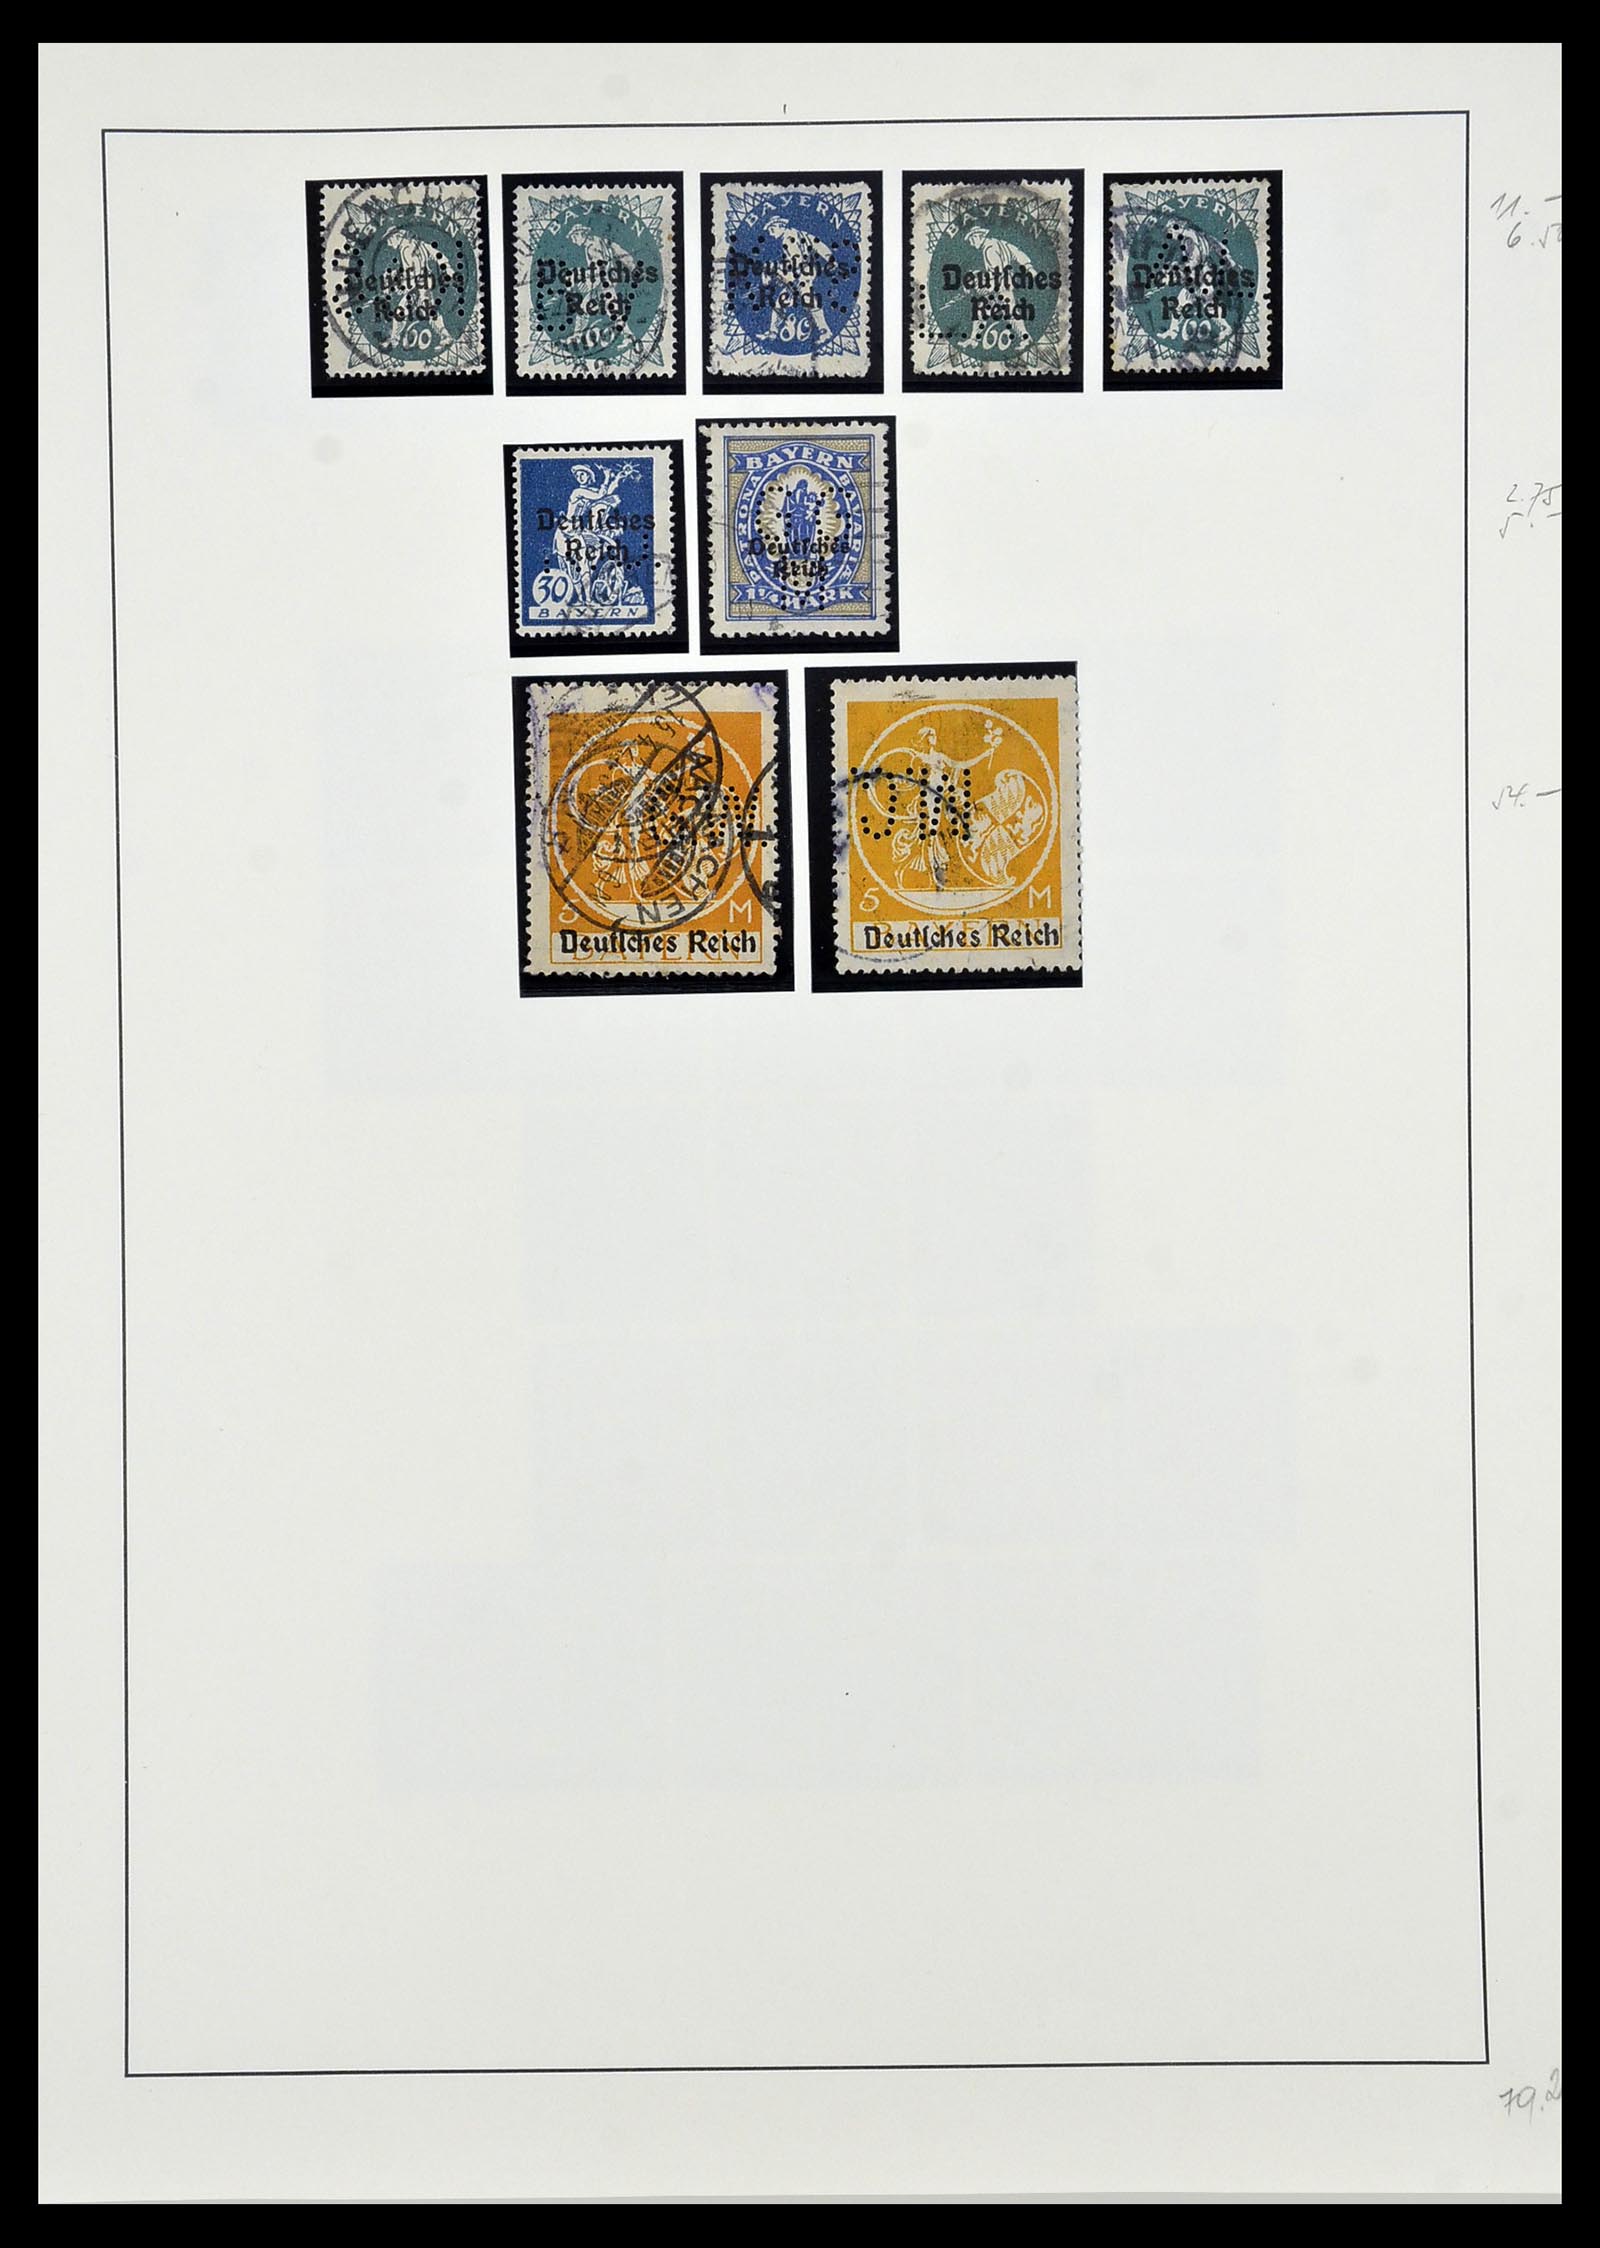 34409 009 - Stamp Collection 34409 German Reich perfins.